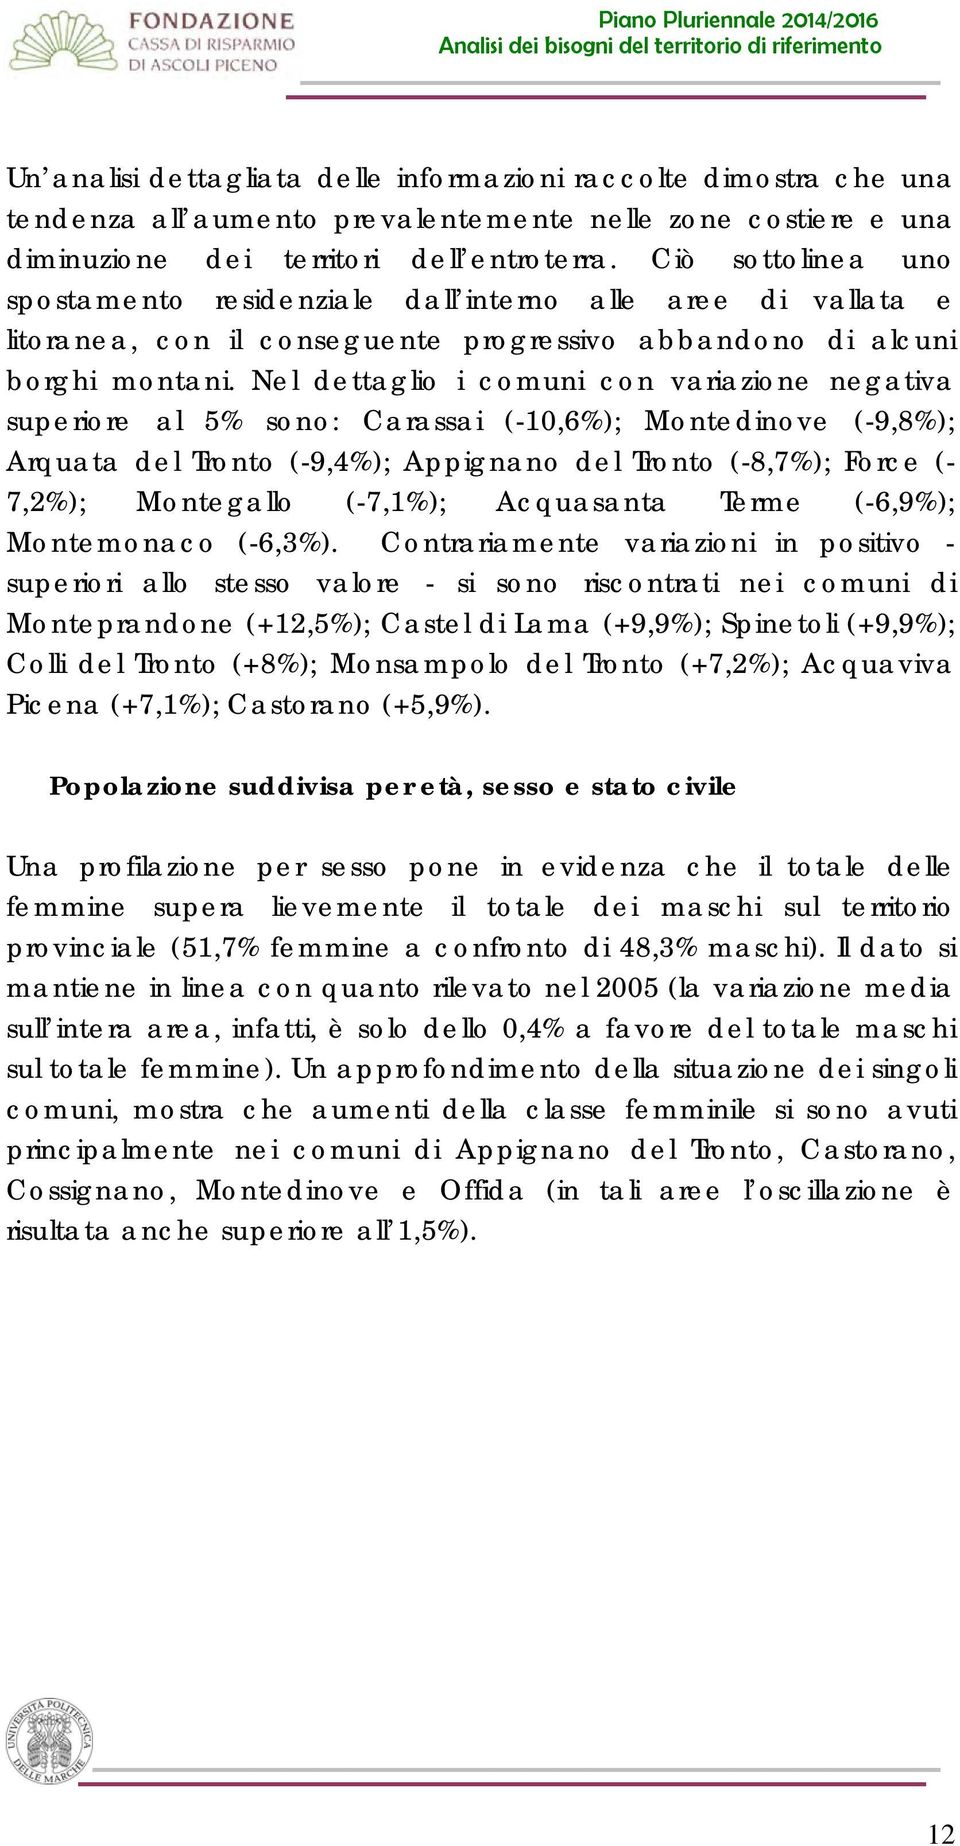 Nel dettaglio i comuni con variazione negativa superiore al 5% sono: Carassai (-10,6%); Montedinove (-9,8%); Arquata del Tronto (-9,4%); Appignano del Tronto (-8,7%); Force (- 7,2%); Montegallo